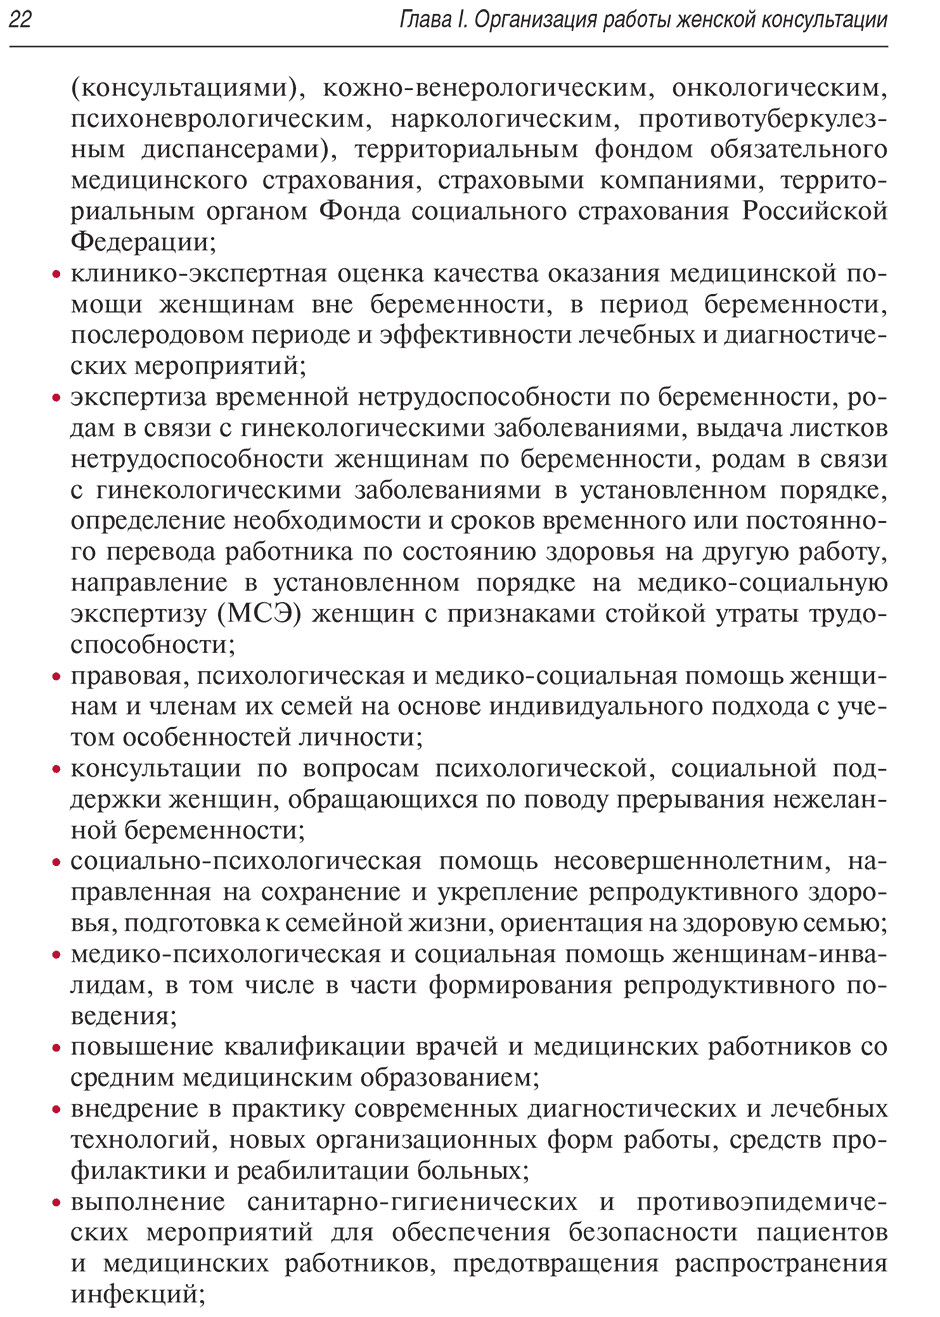 Пример страницы из книги "Женская консультация: руководство" - Радзинский В. Е.